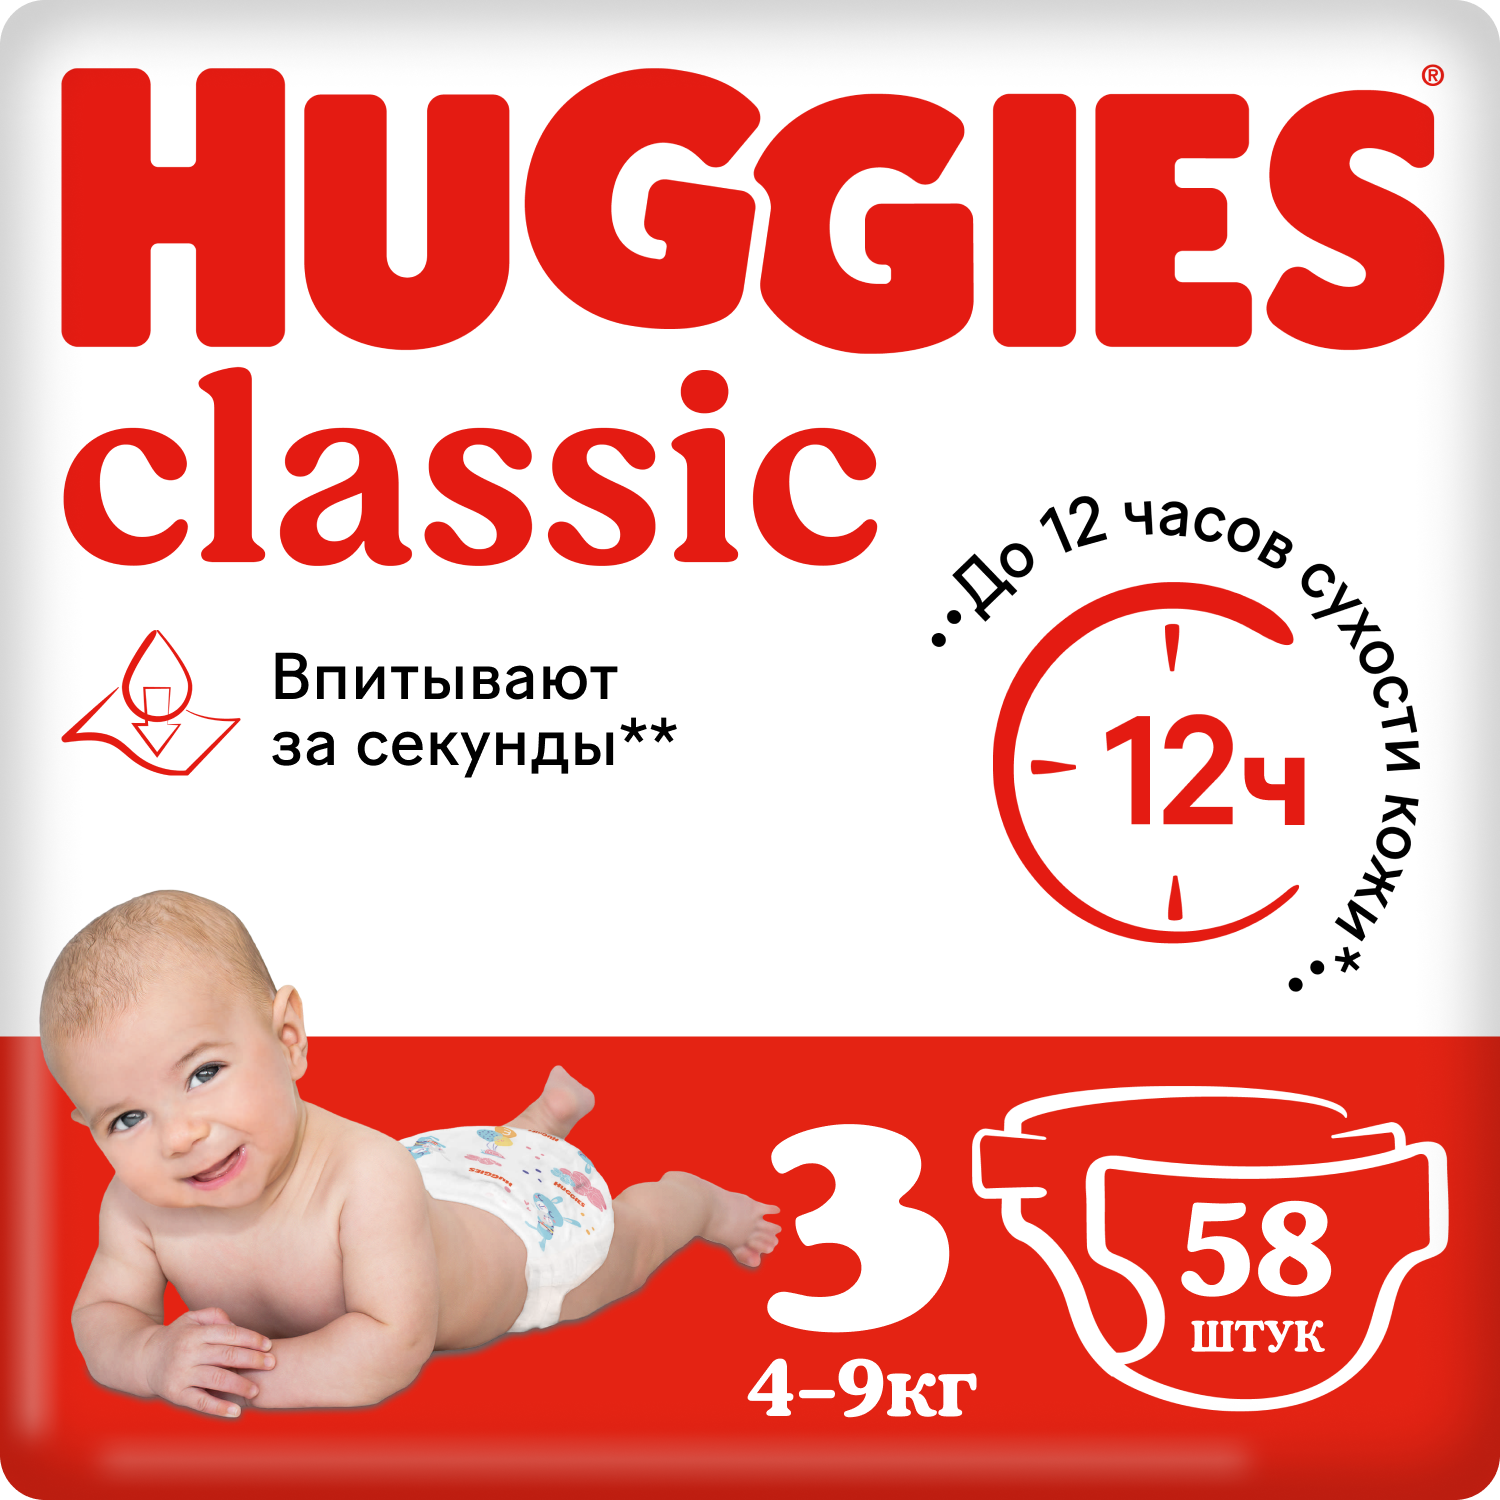 Подгузники Huggies Classic 3 (4-9 кг), 58 шт. подгузники huggies classic 4 7 18 кг 14 шт